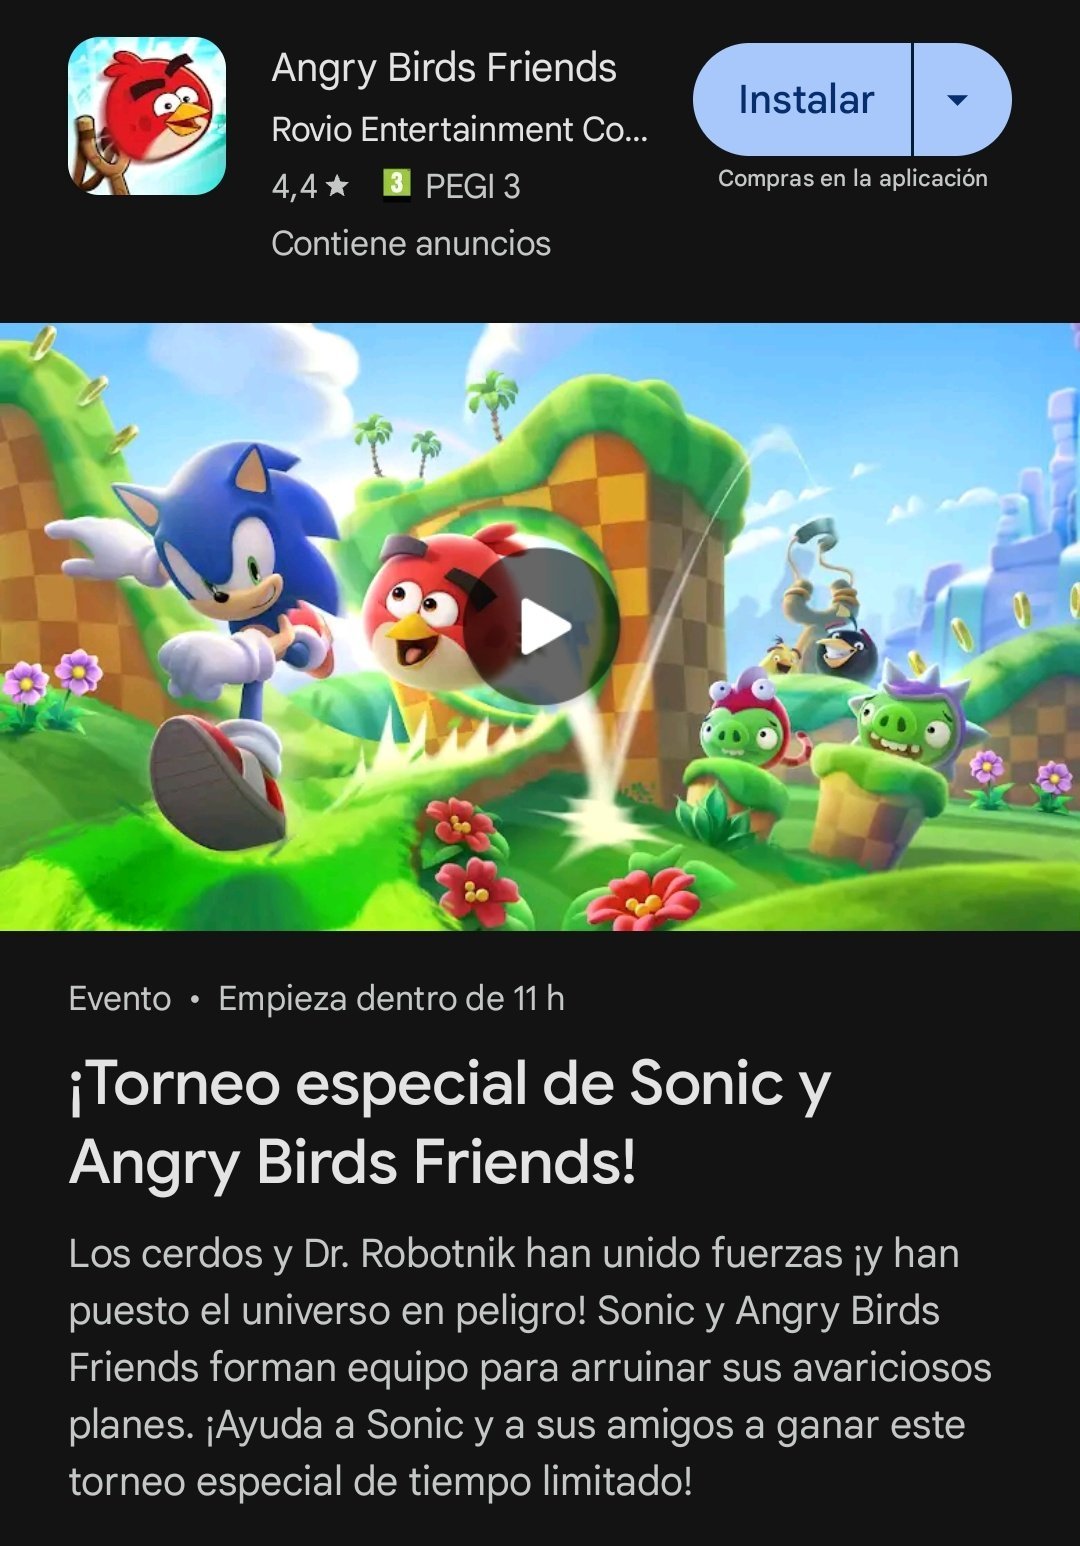 Sonic The Hedgehog x Angry Birds anuncian colaboración,¿Nuevo juego en camino? 6